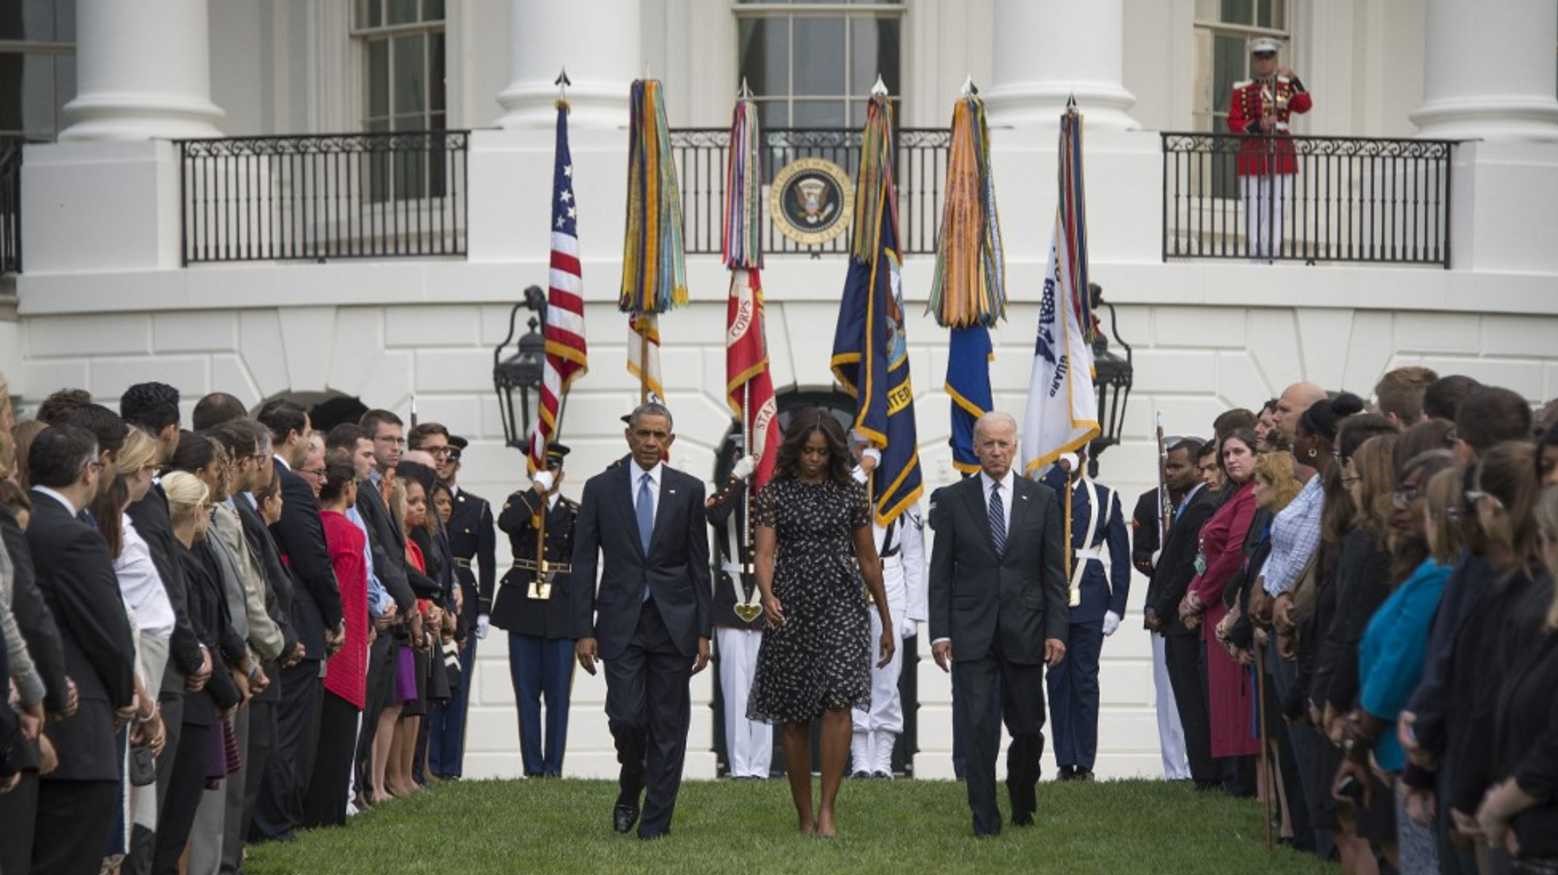 الرئيس الأميركي الأسبق باراك أوباما وزوجته ميشيل يشاركان الرئيس الأميركي جو بايدن في إحياء الذكرى العشرين لاعتداءات 11 سبتمبر